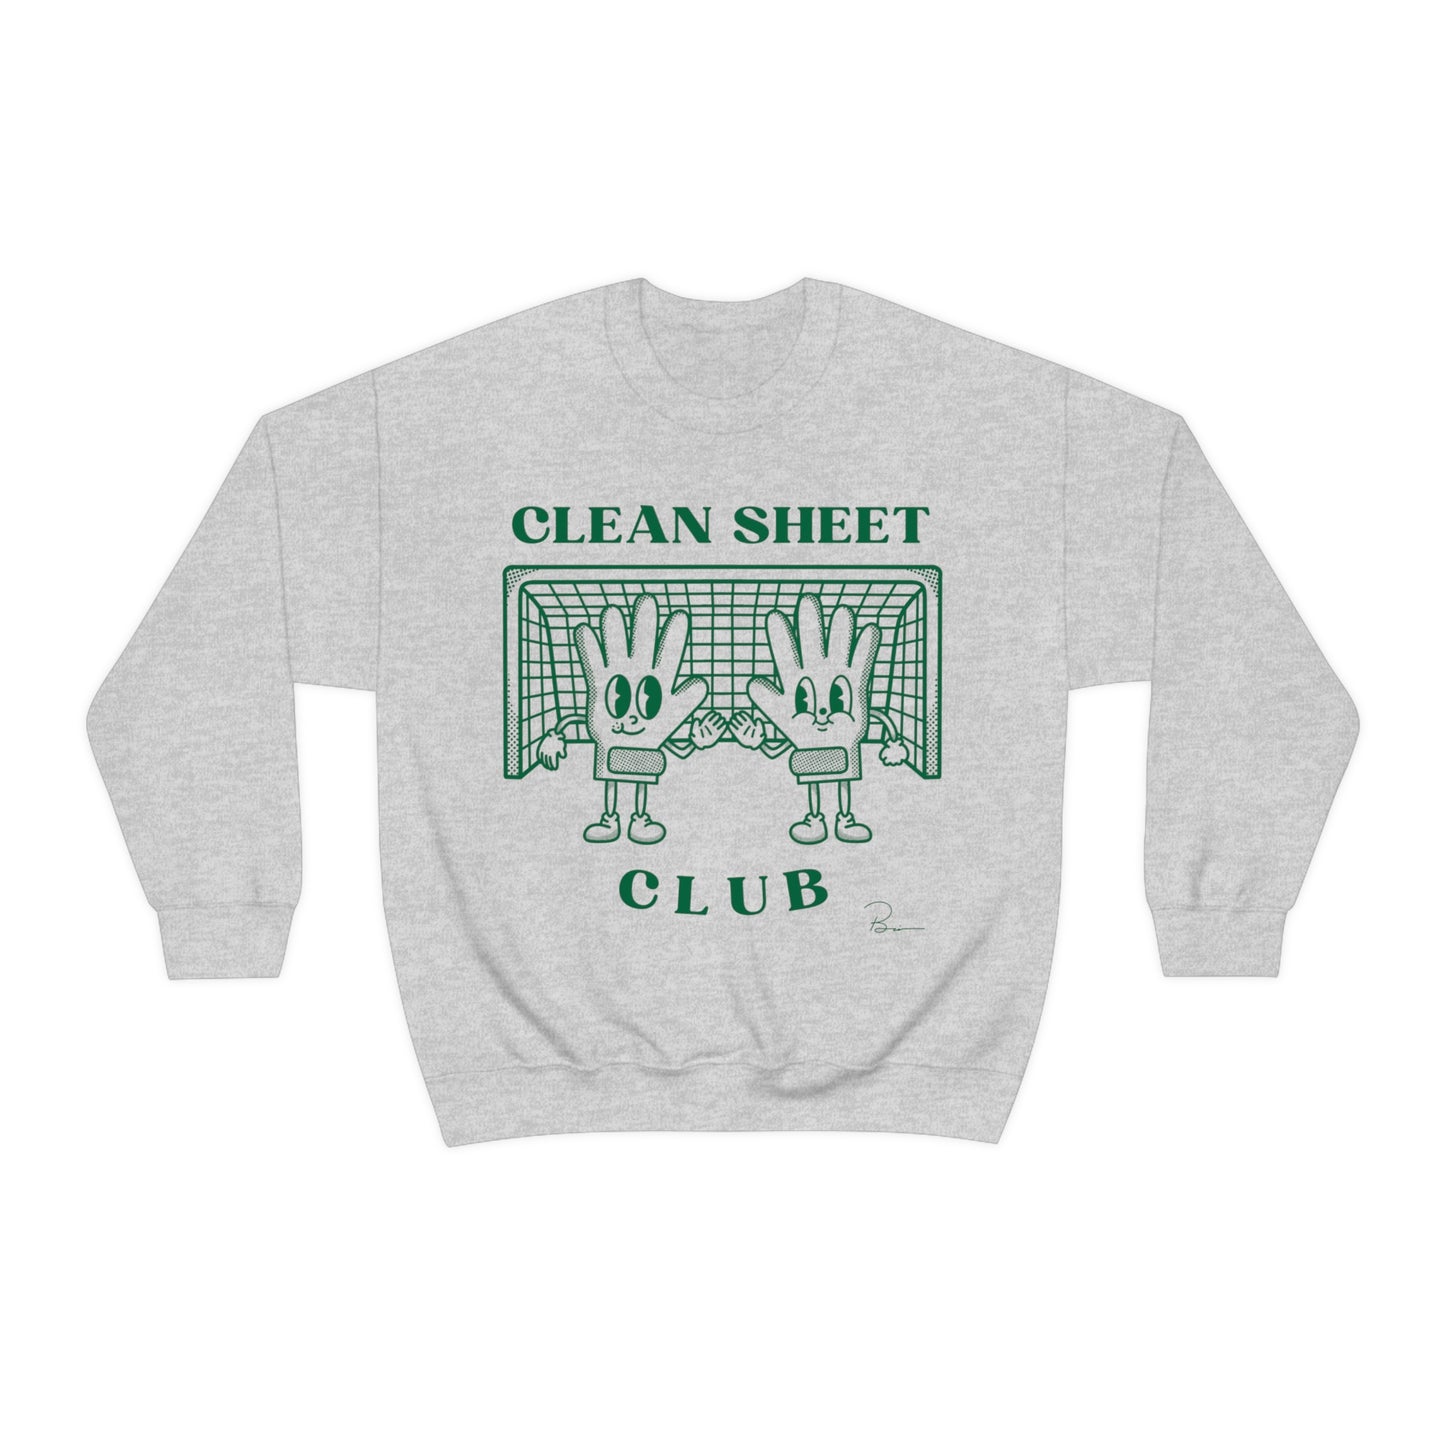 Clean Sheet Club Crew, Green